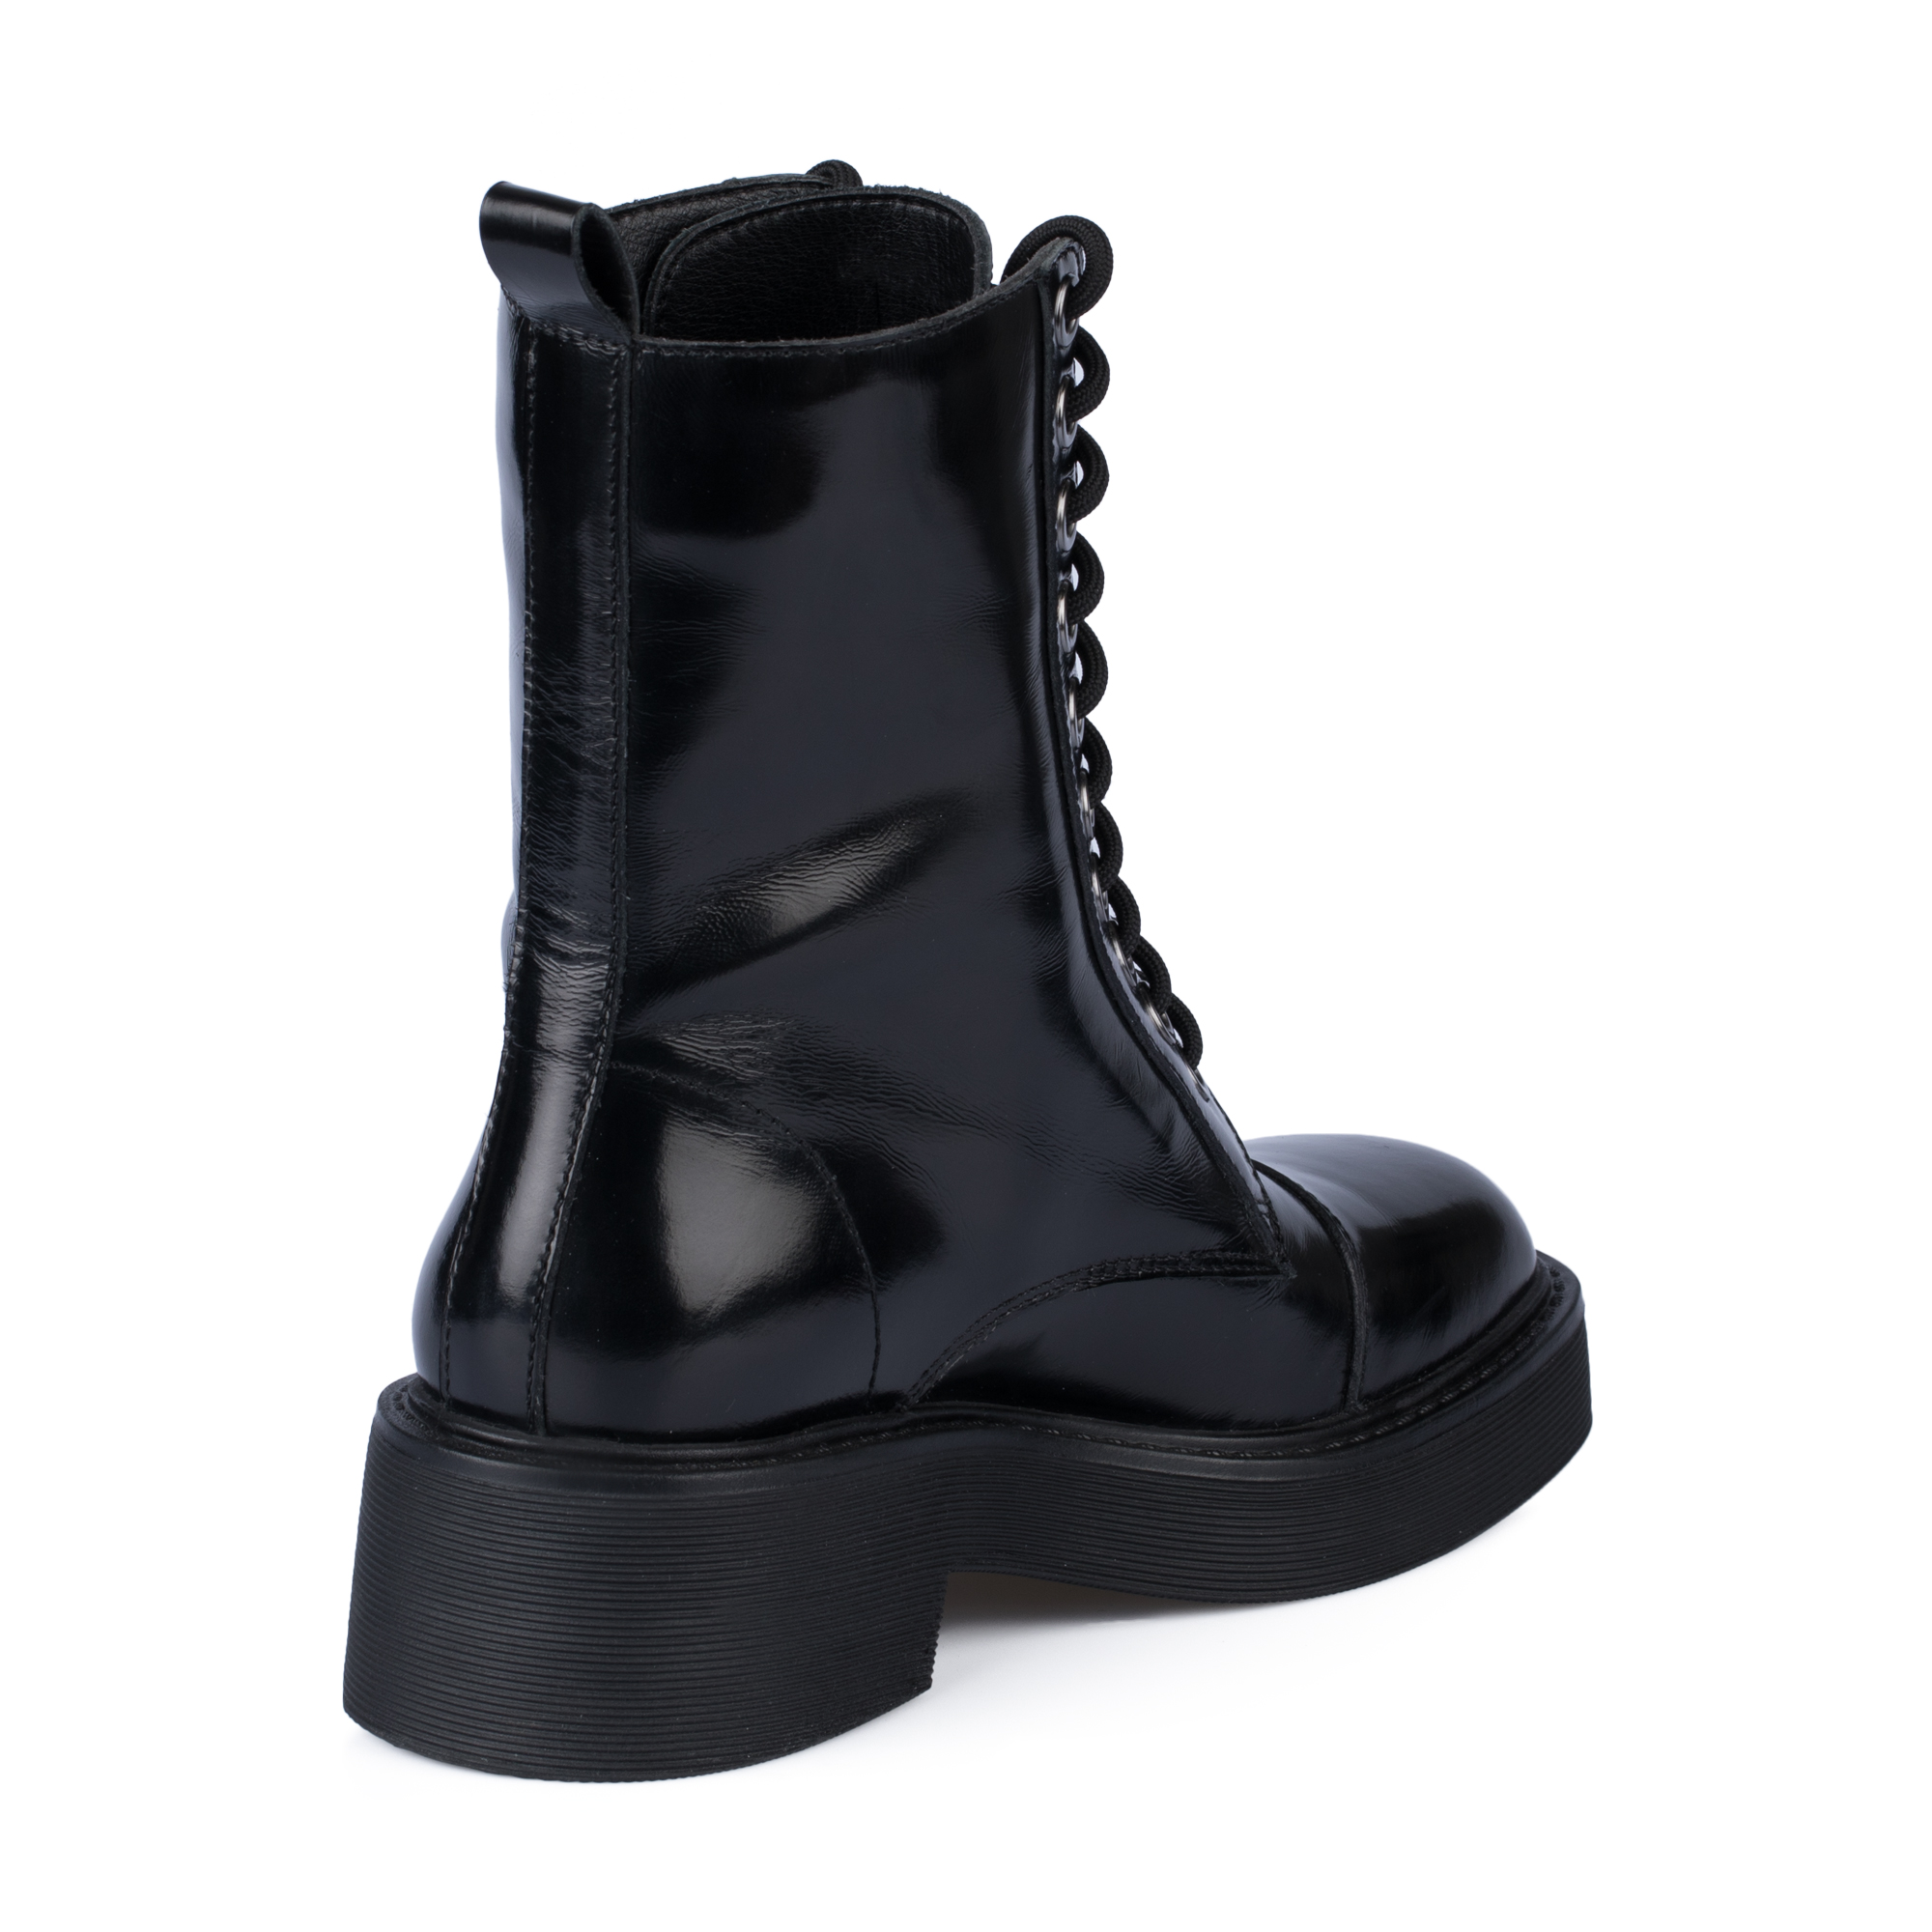 Ботинки Thomas Munz 126-400A-2102, цвет черный, размер 38 - фото 3